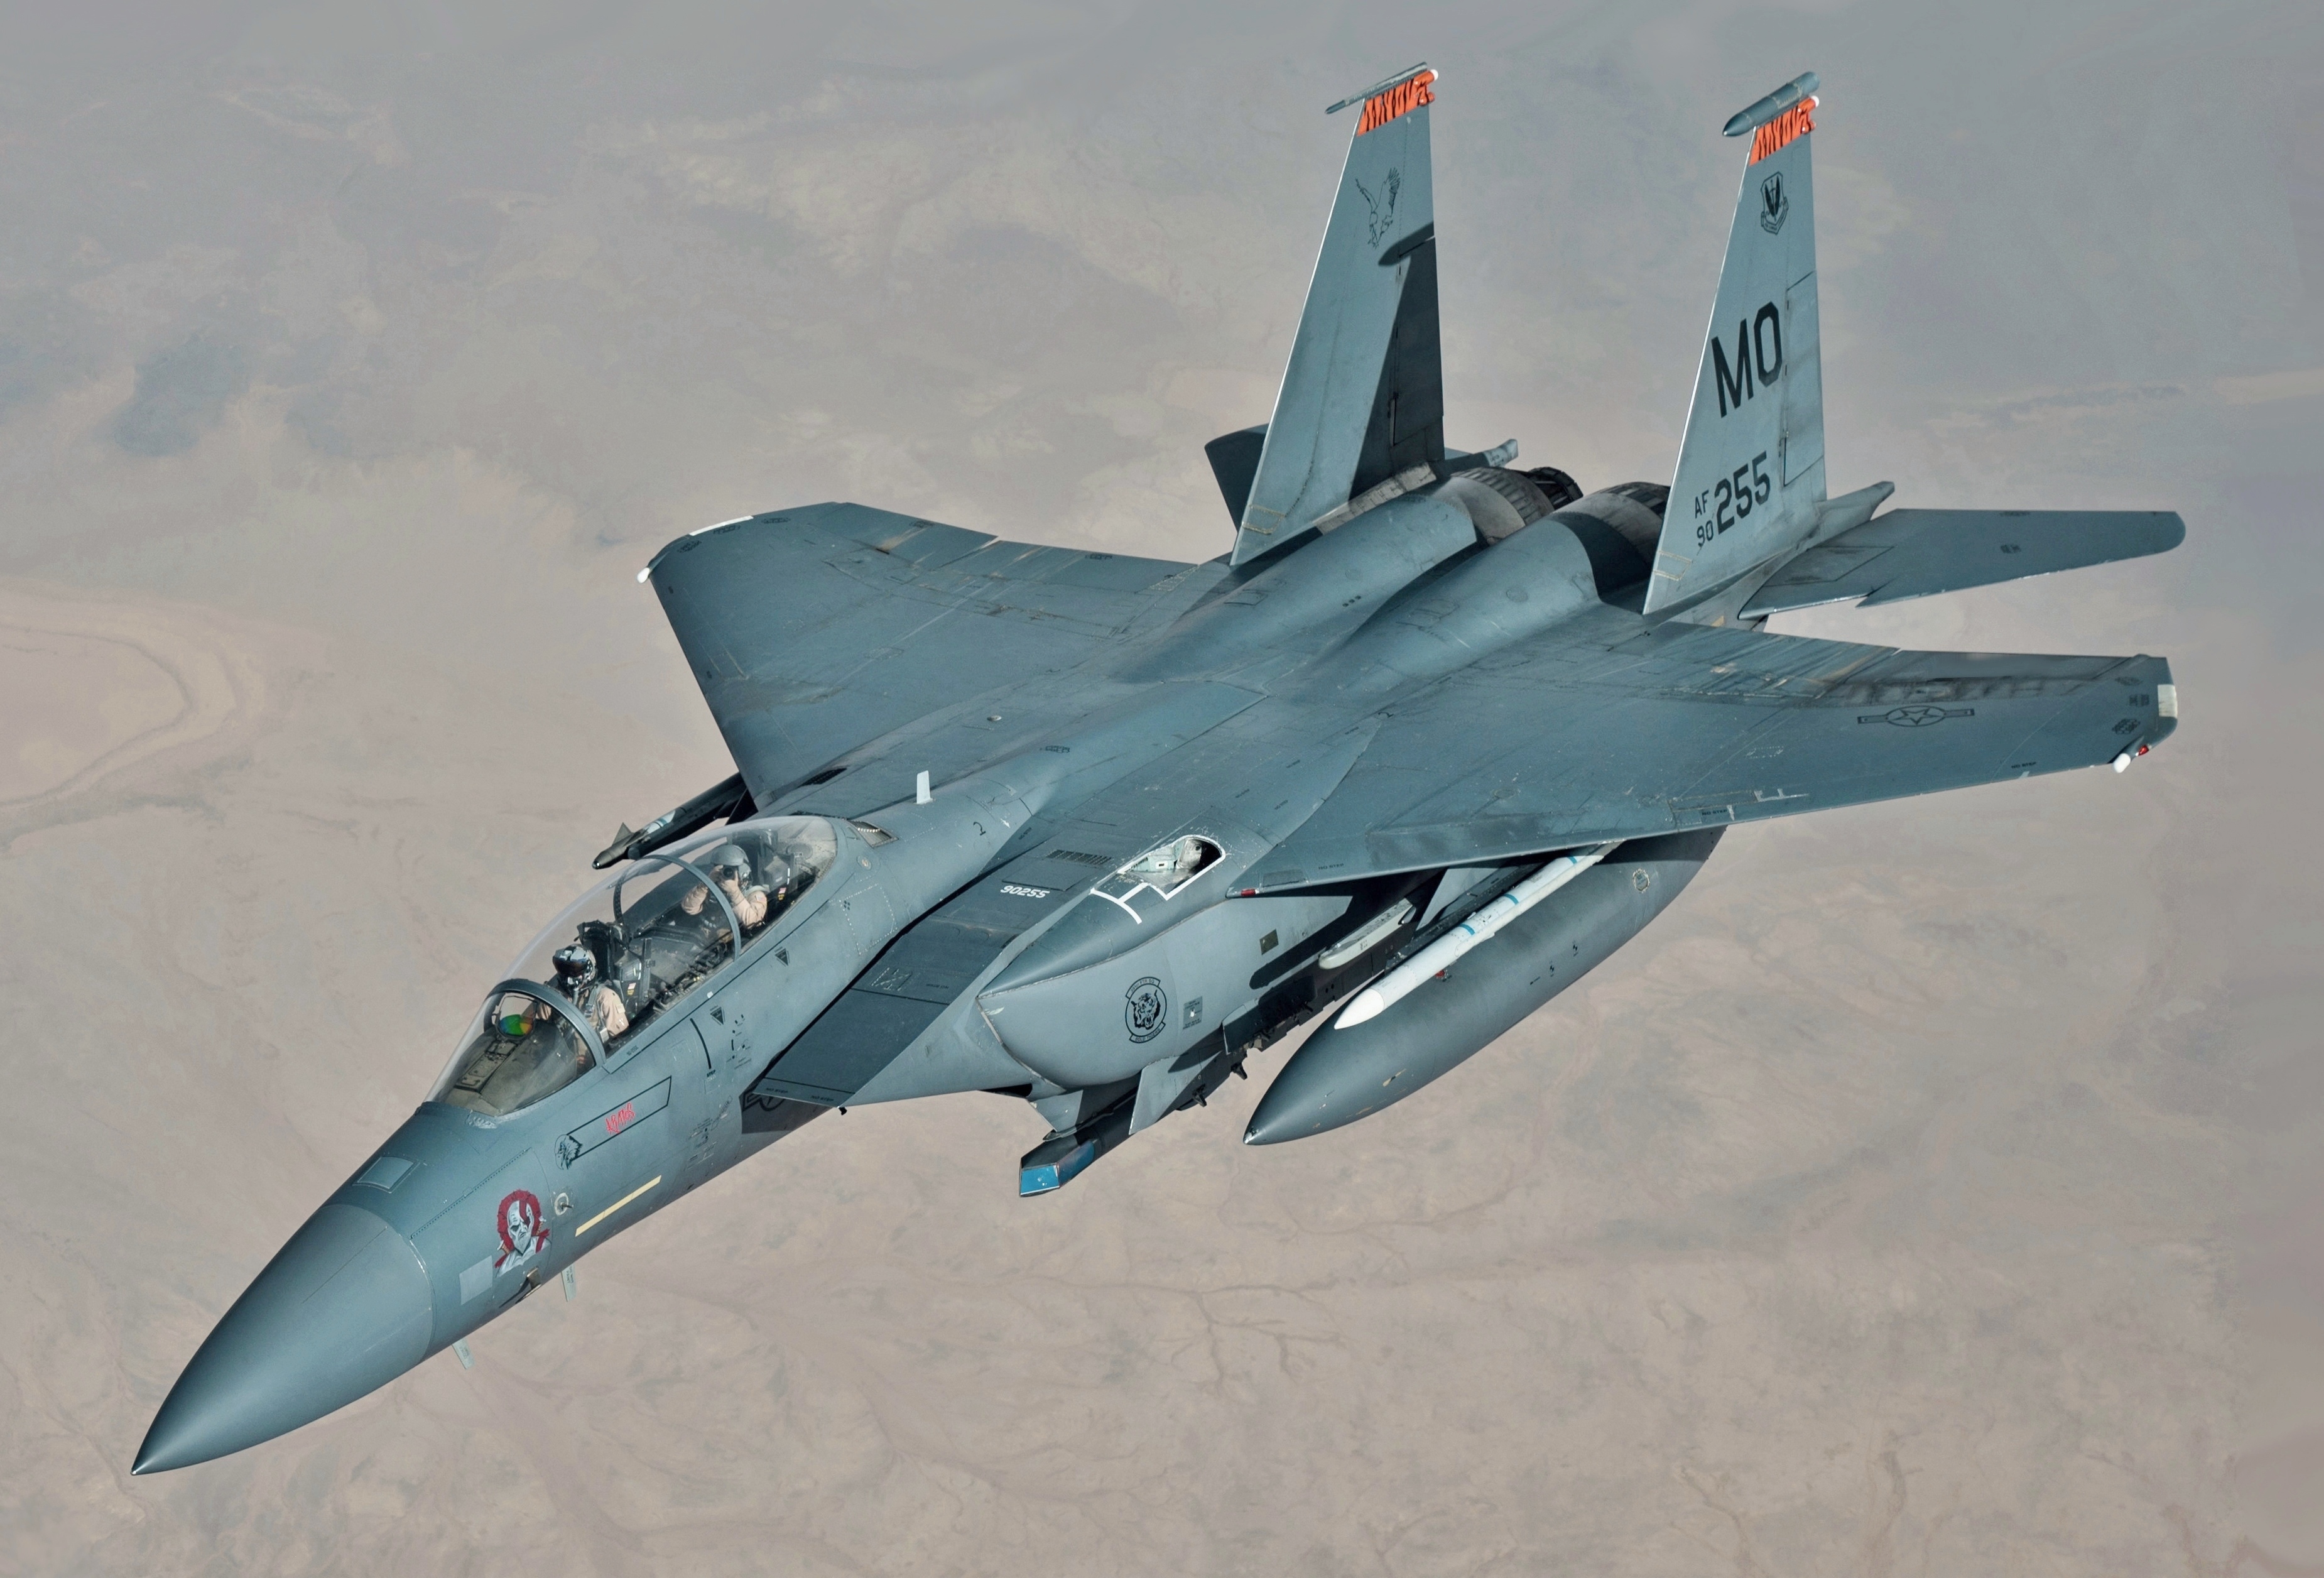 The F-15E Strike Eagle